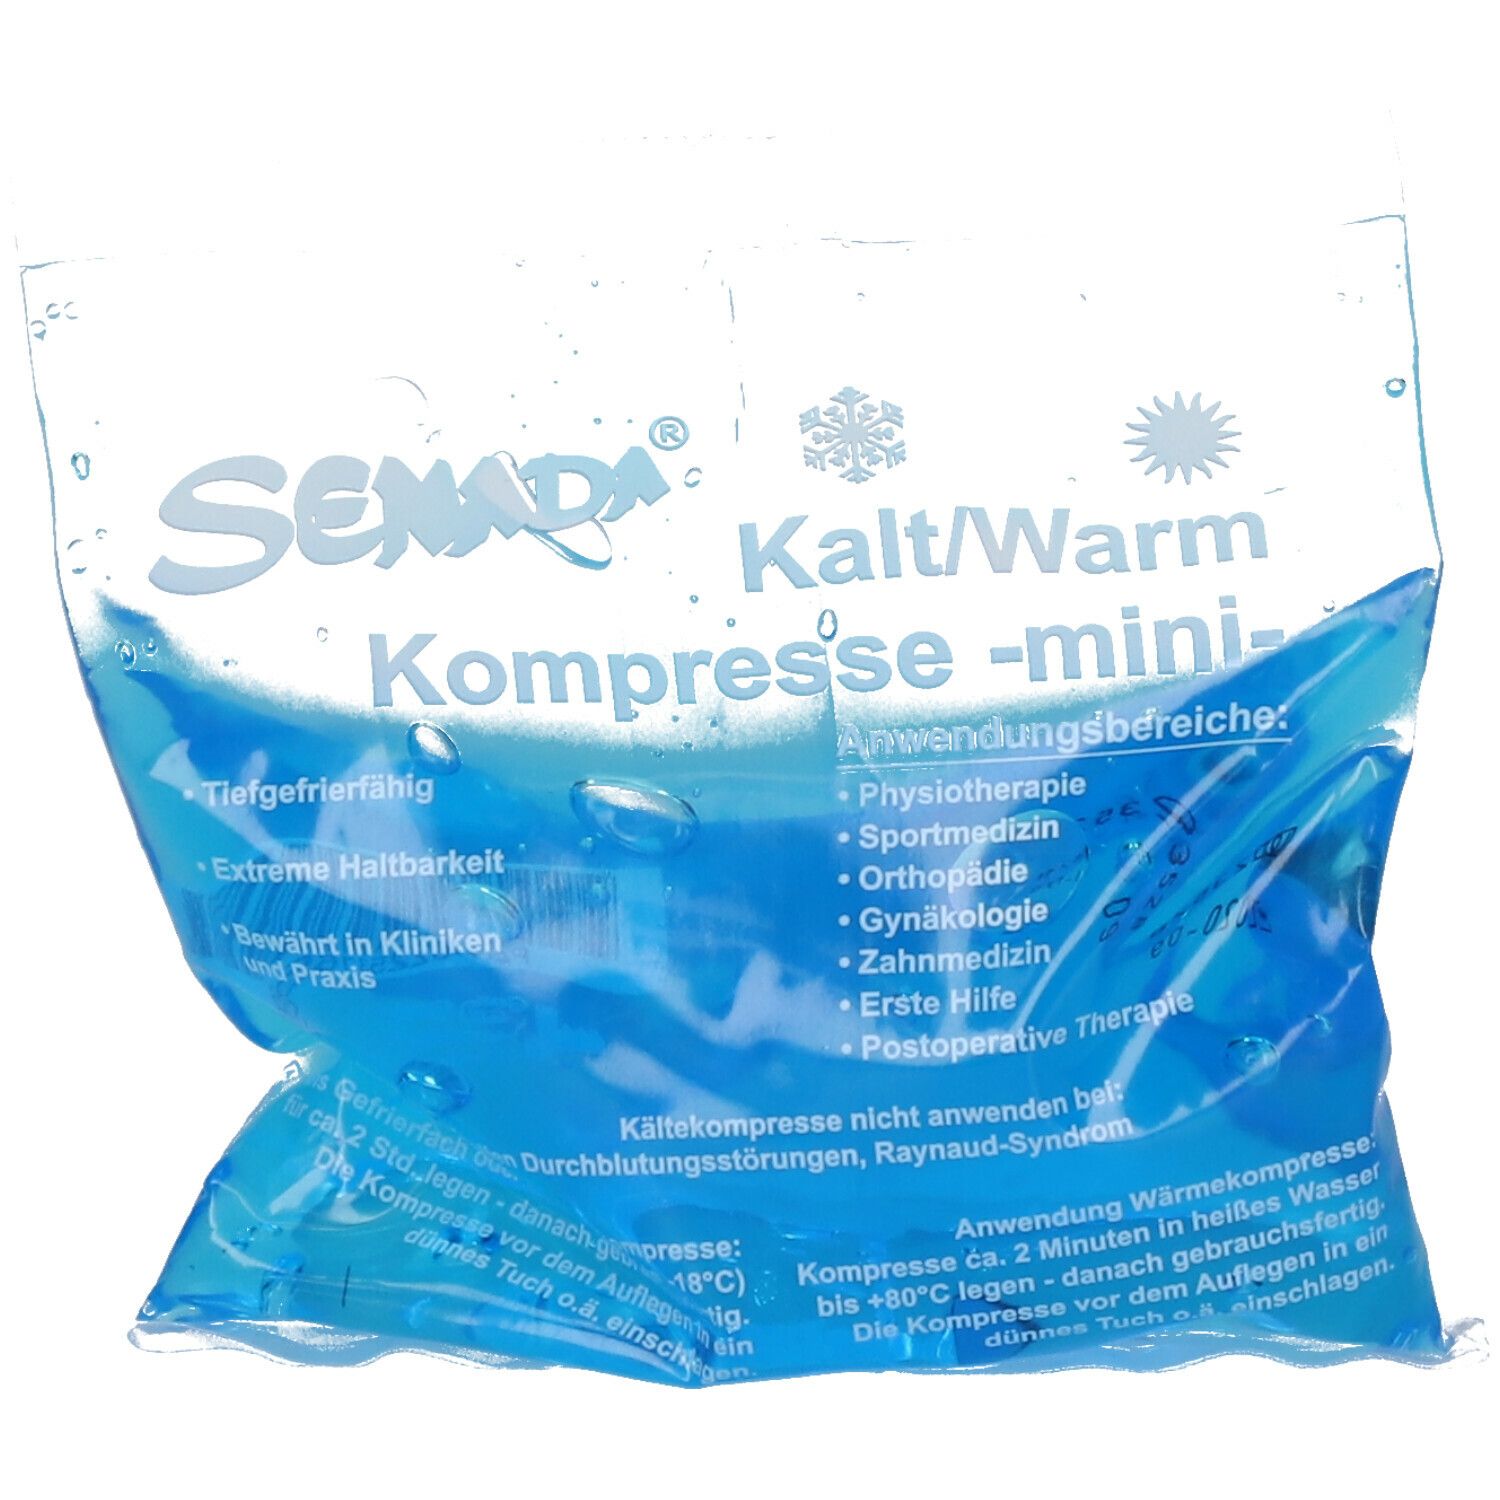 Senada Kalt/Warm Kompresse mini 10 x 10 cm